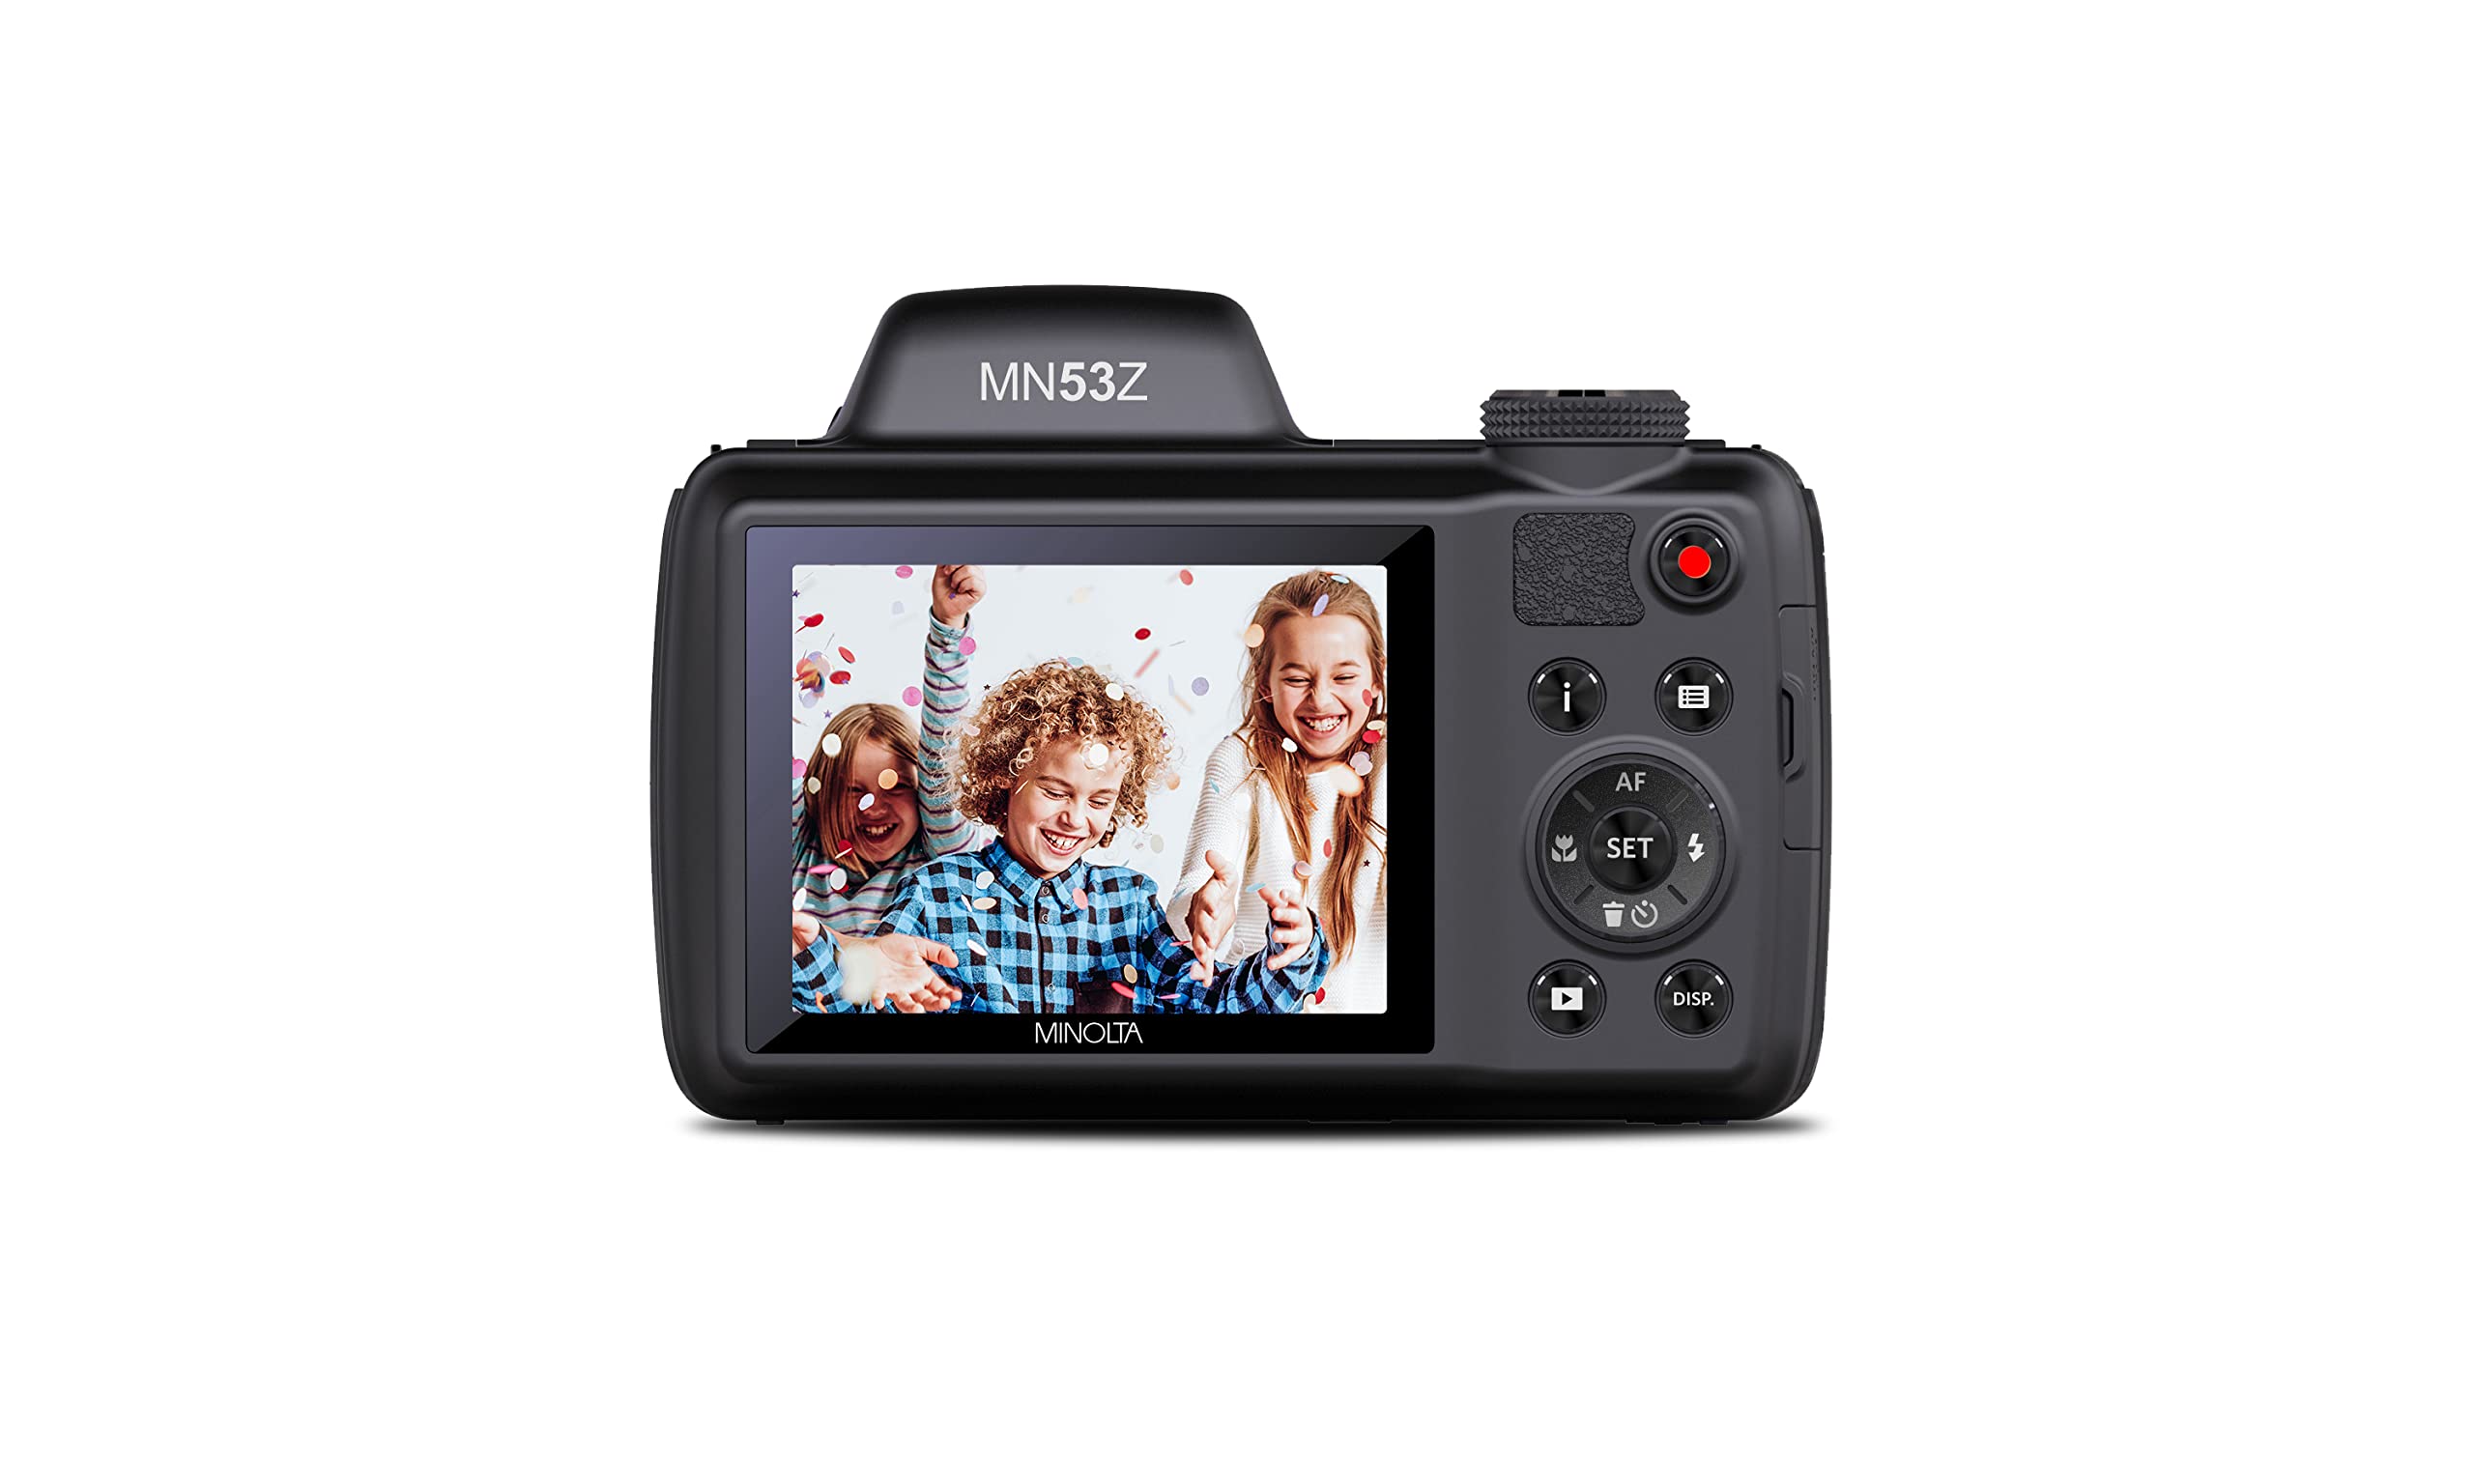 Minolta Pro Shot 16 Mega Pixel HD Digital Camera with 53x Optical Zoom, Full 1080p HD Video & 16GB SD Card, MN53Z, Black